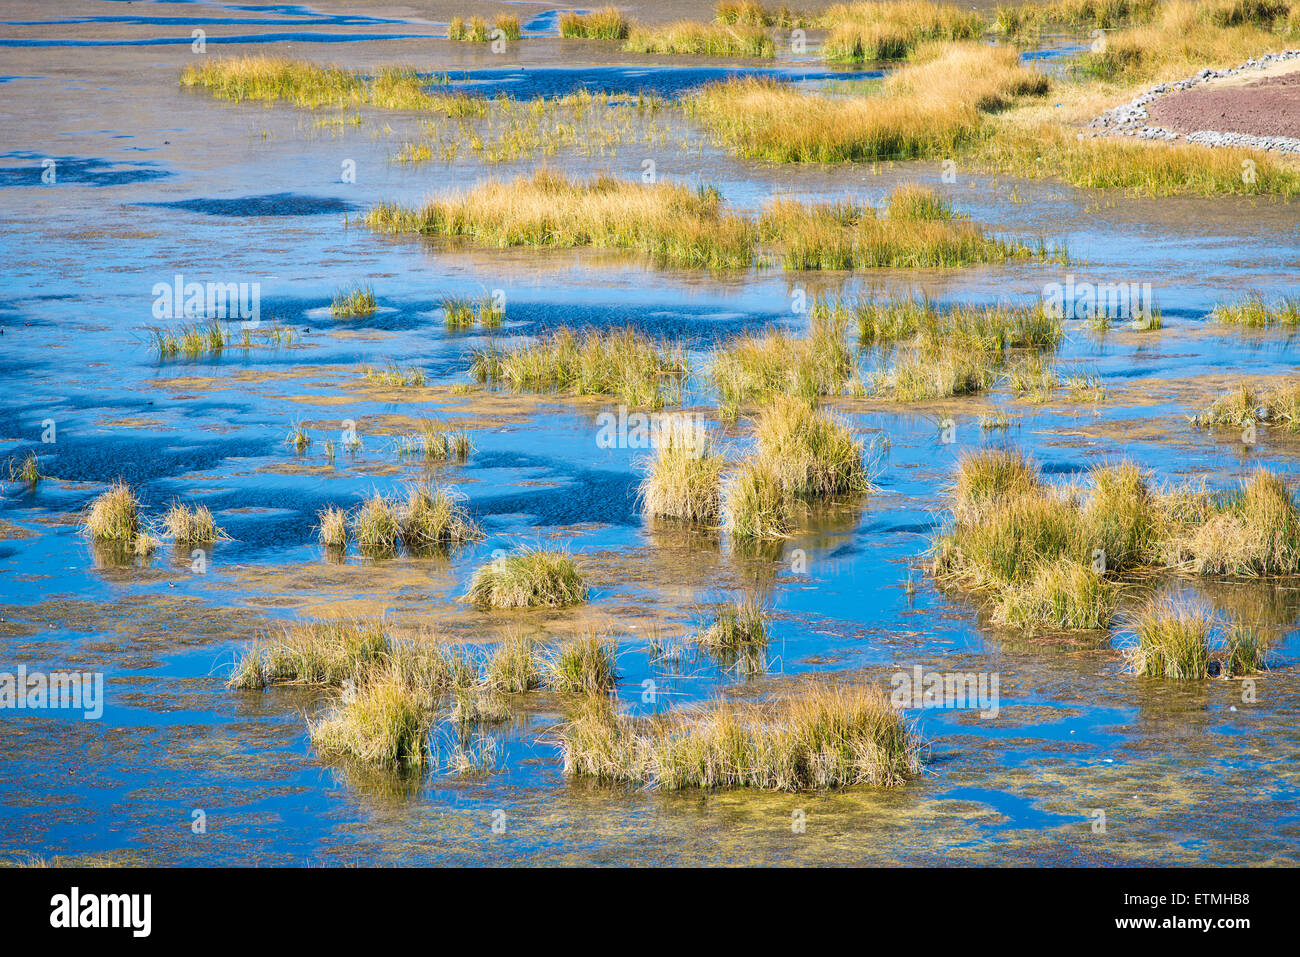 Reeds in water, Lake Umayo, Sillustani, Puno Region, Peru Stock Photo